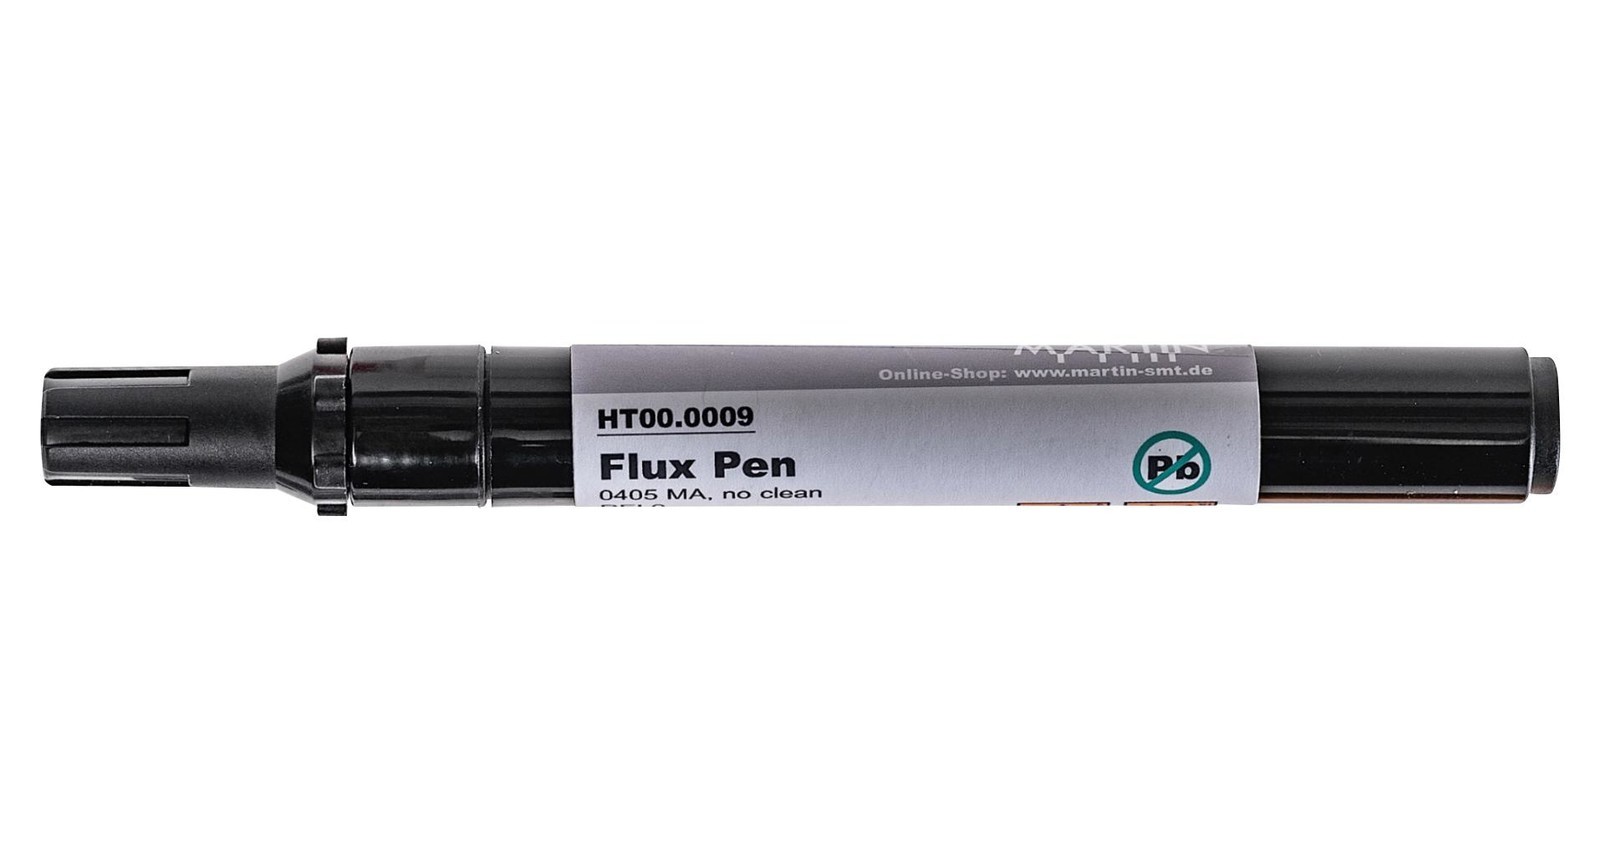 Martin Smt Ht00.0009 Flux Pen Lead-Free